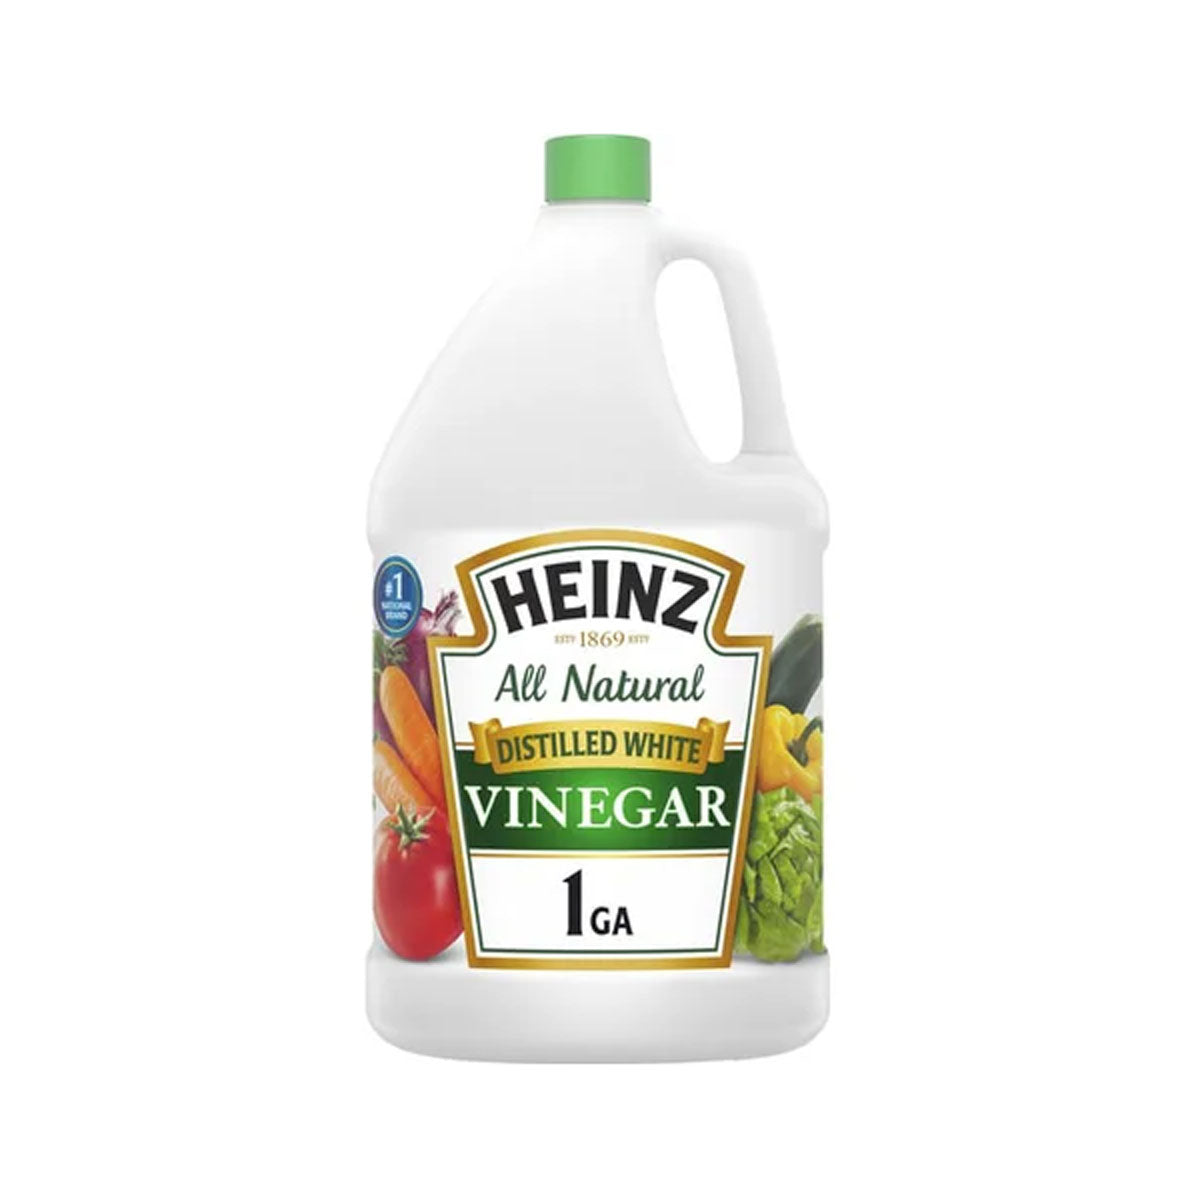 Heinz White Distilled Vinegar 5% 1 GAL